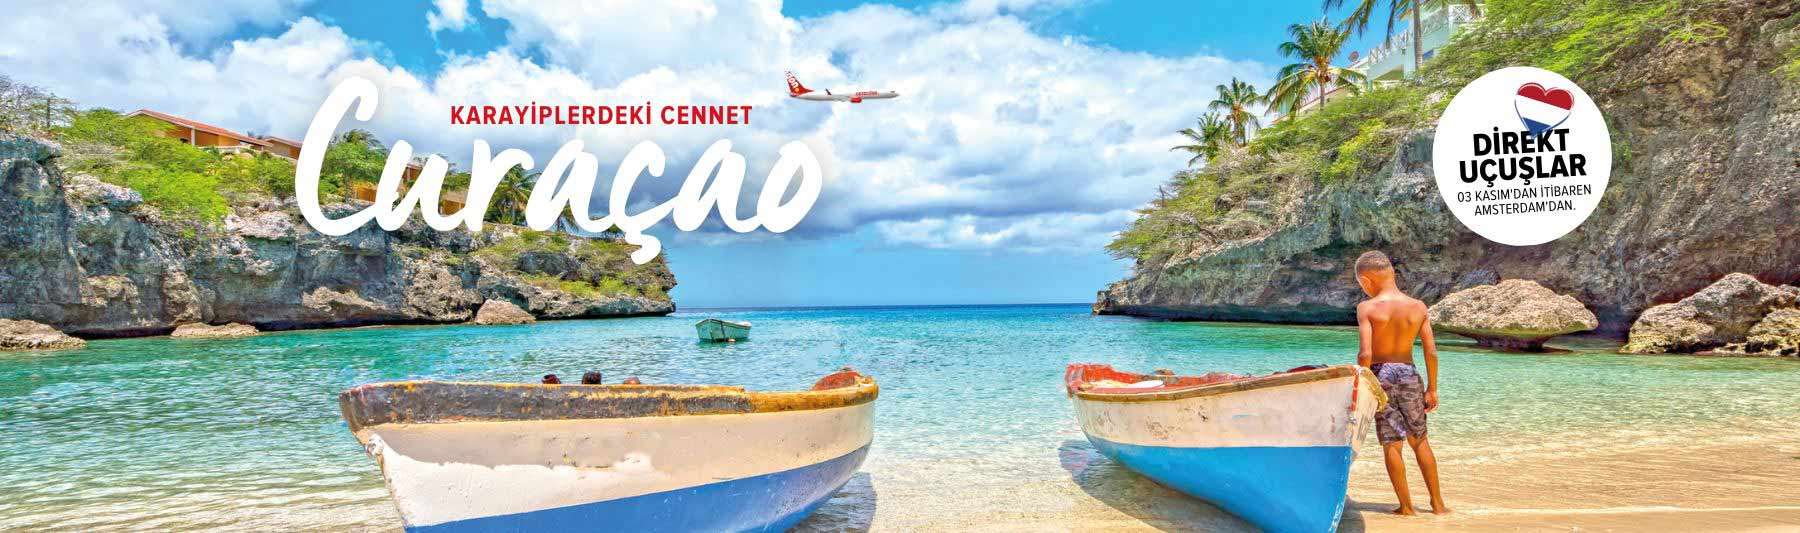 Tropik ve egzotik cennet Curaçao’da tatilin keyfini çıkar